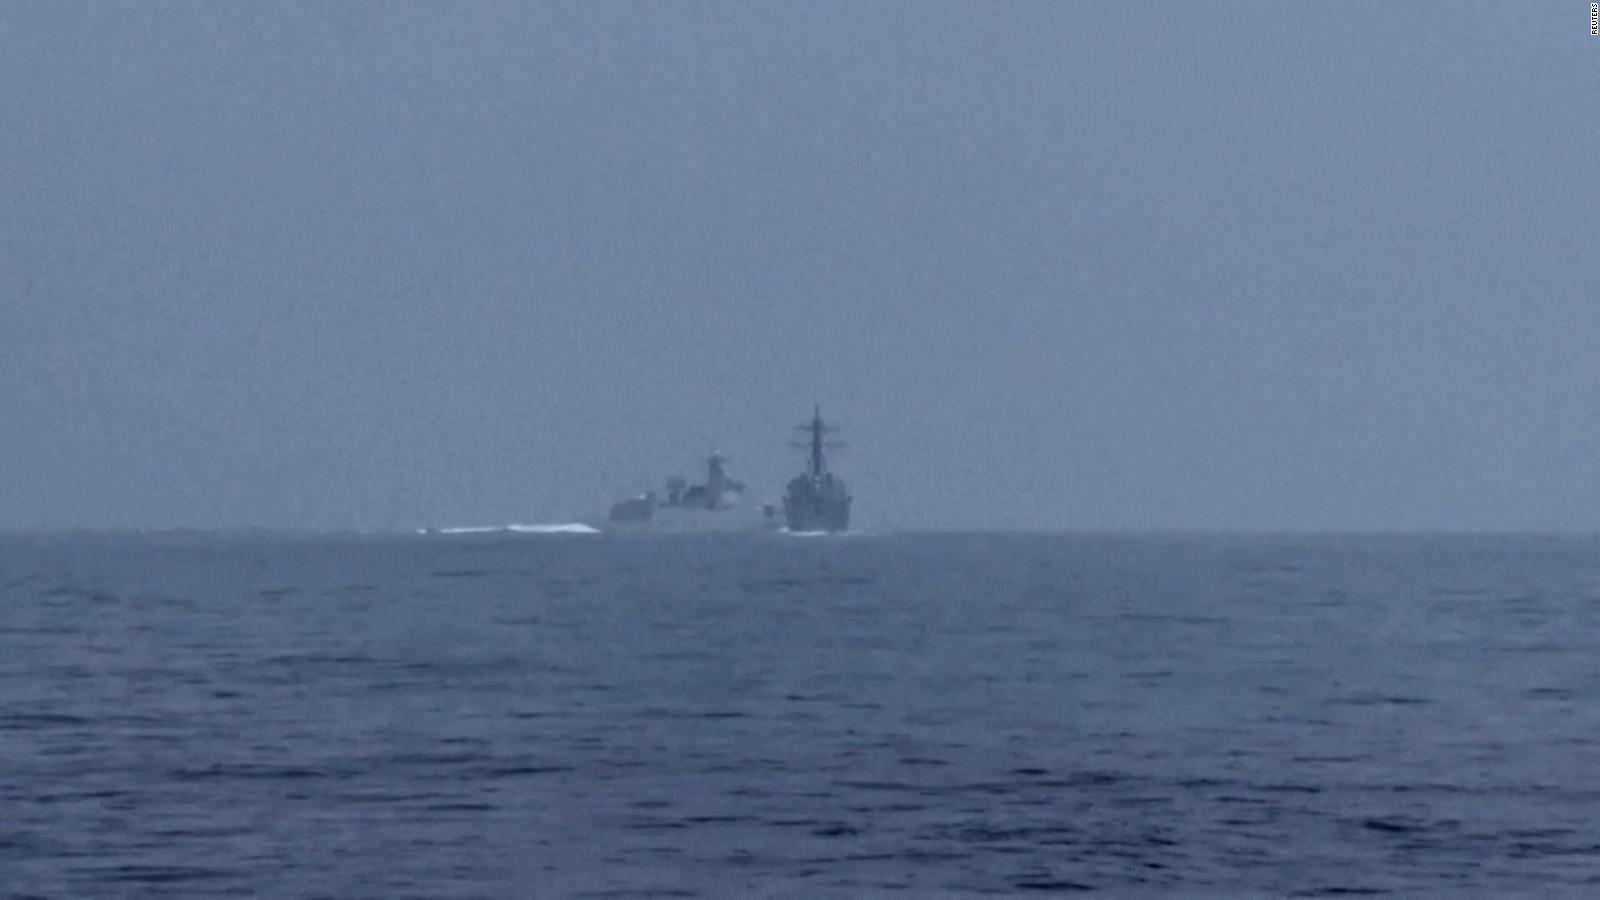 EE.UU. acusa a buque militar chino de ejecutar maniobras inseguras